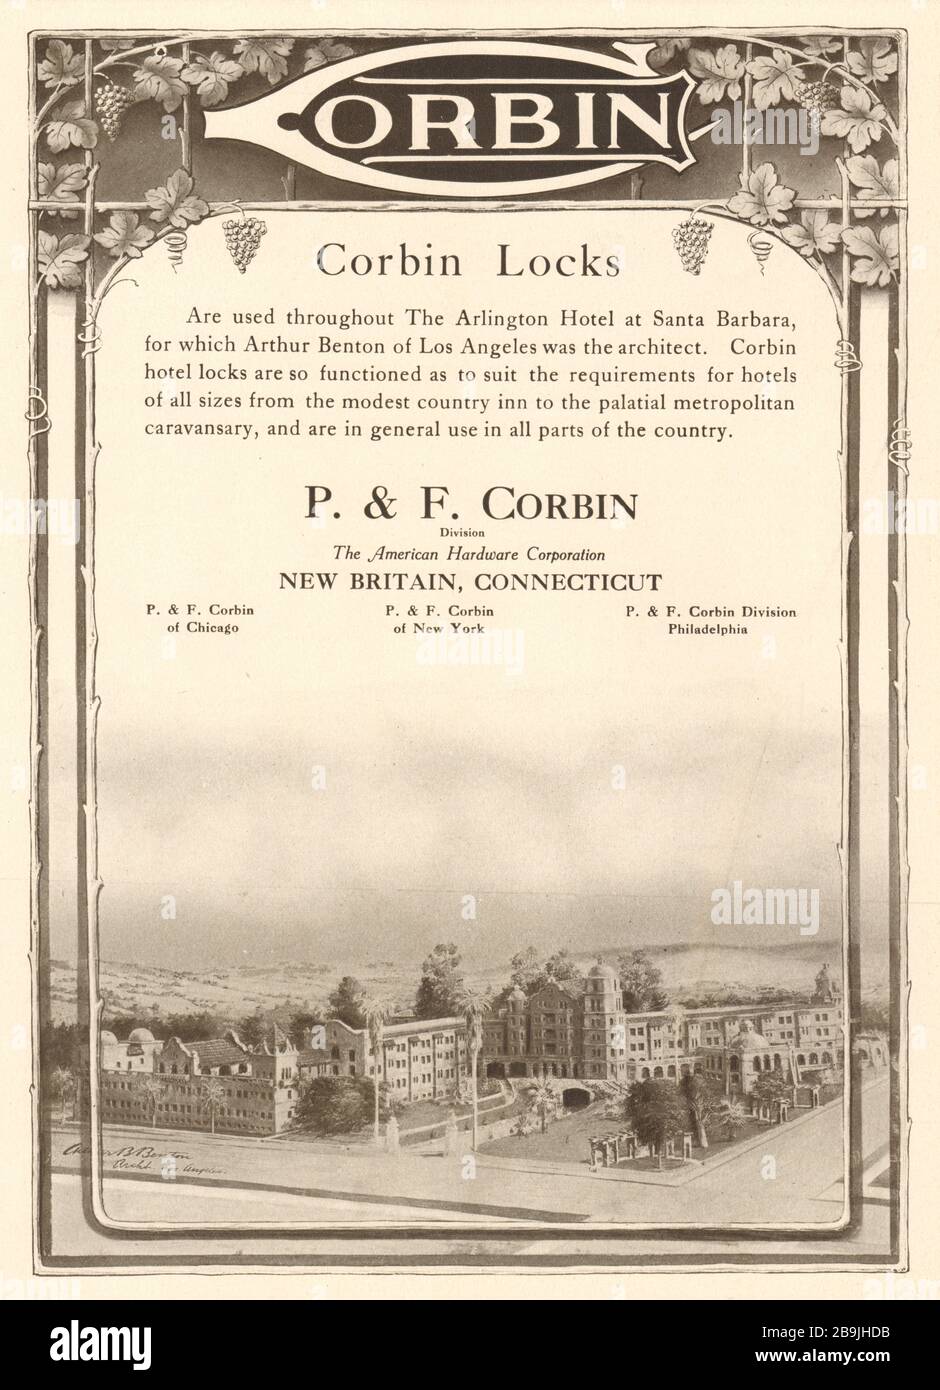 Corbin. Corbin sperrt. P. & F. Corbin, American Hardware Corporation, New Britain, Connecticut (1919) Stockfoto